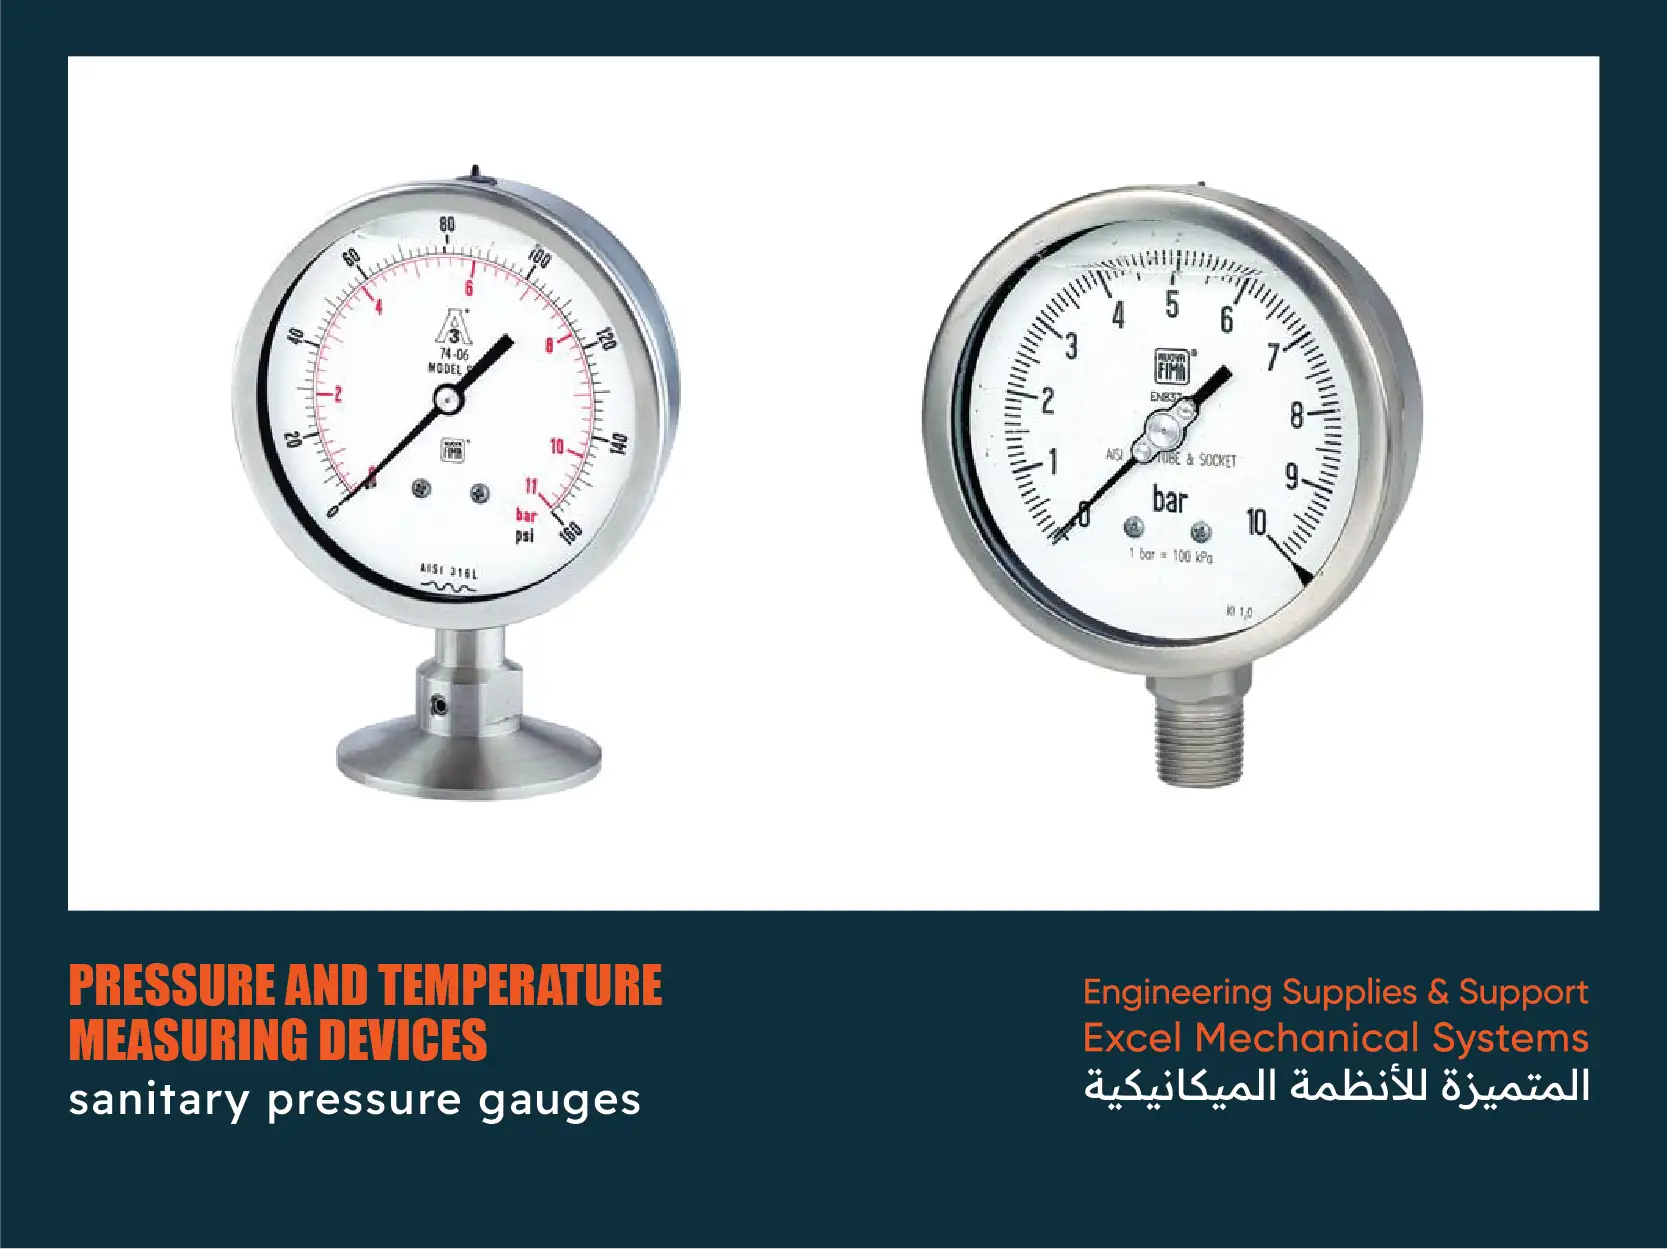 sanitary pressure gauges